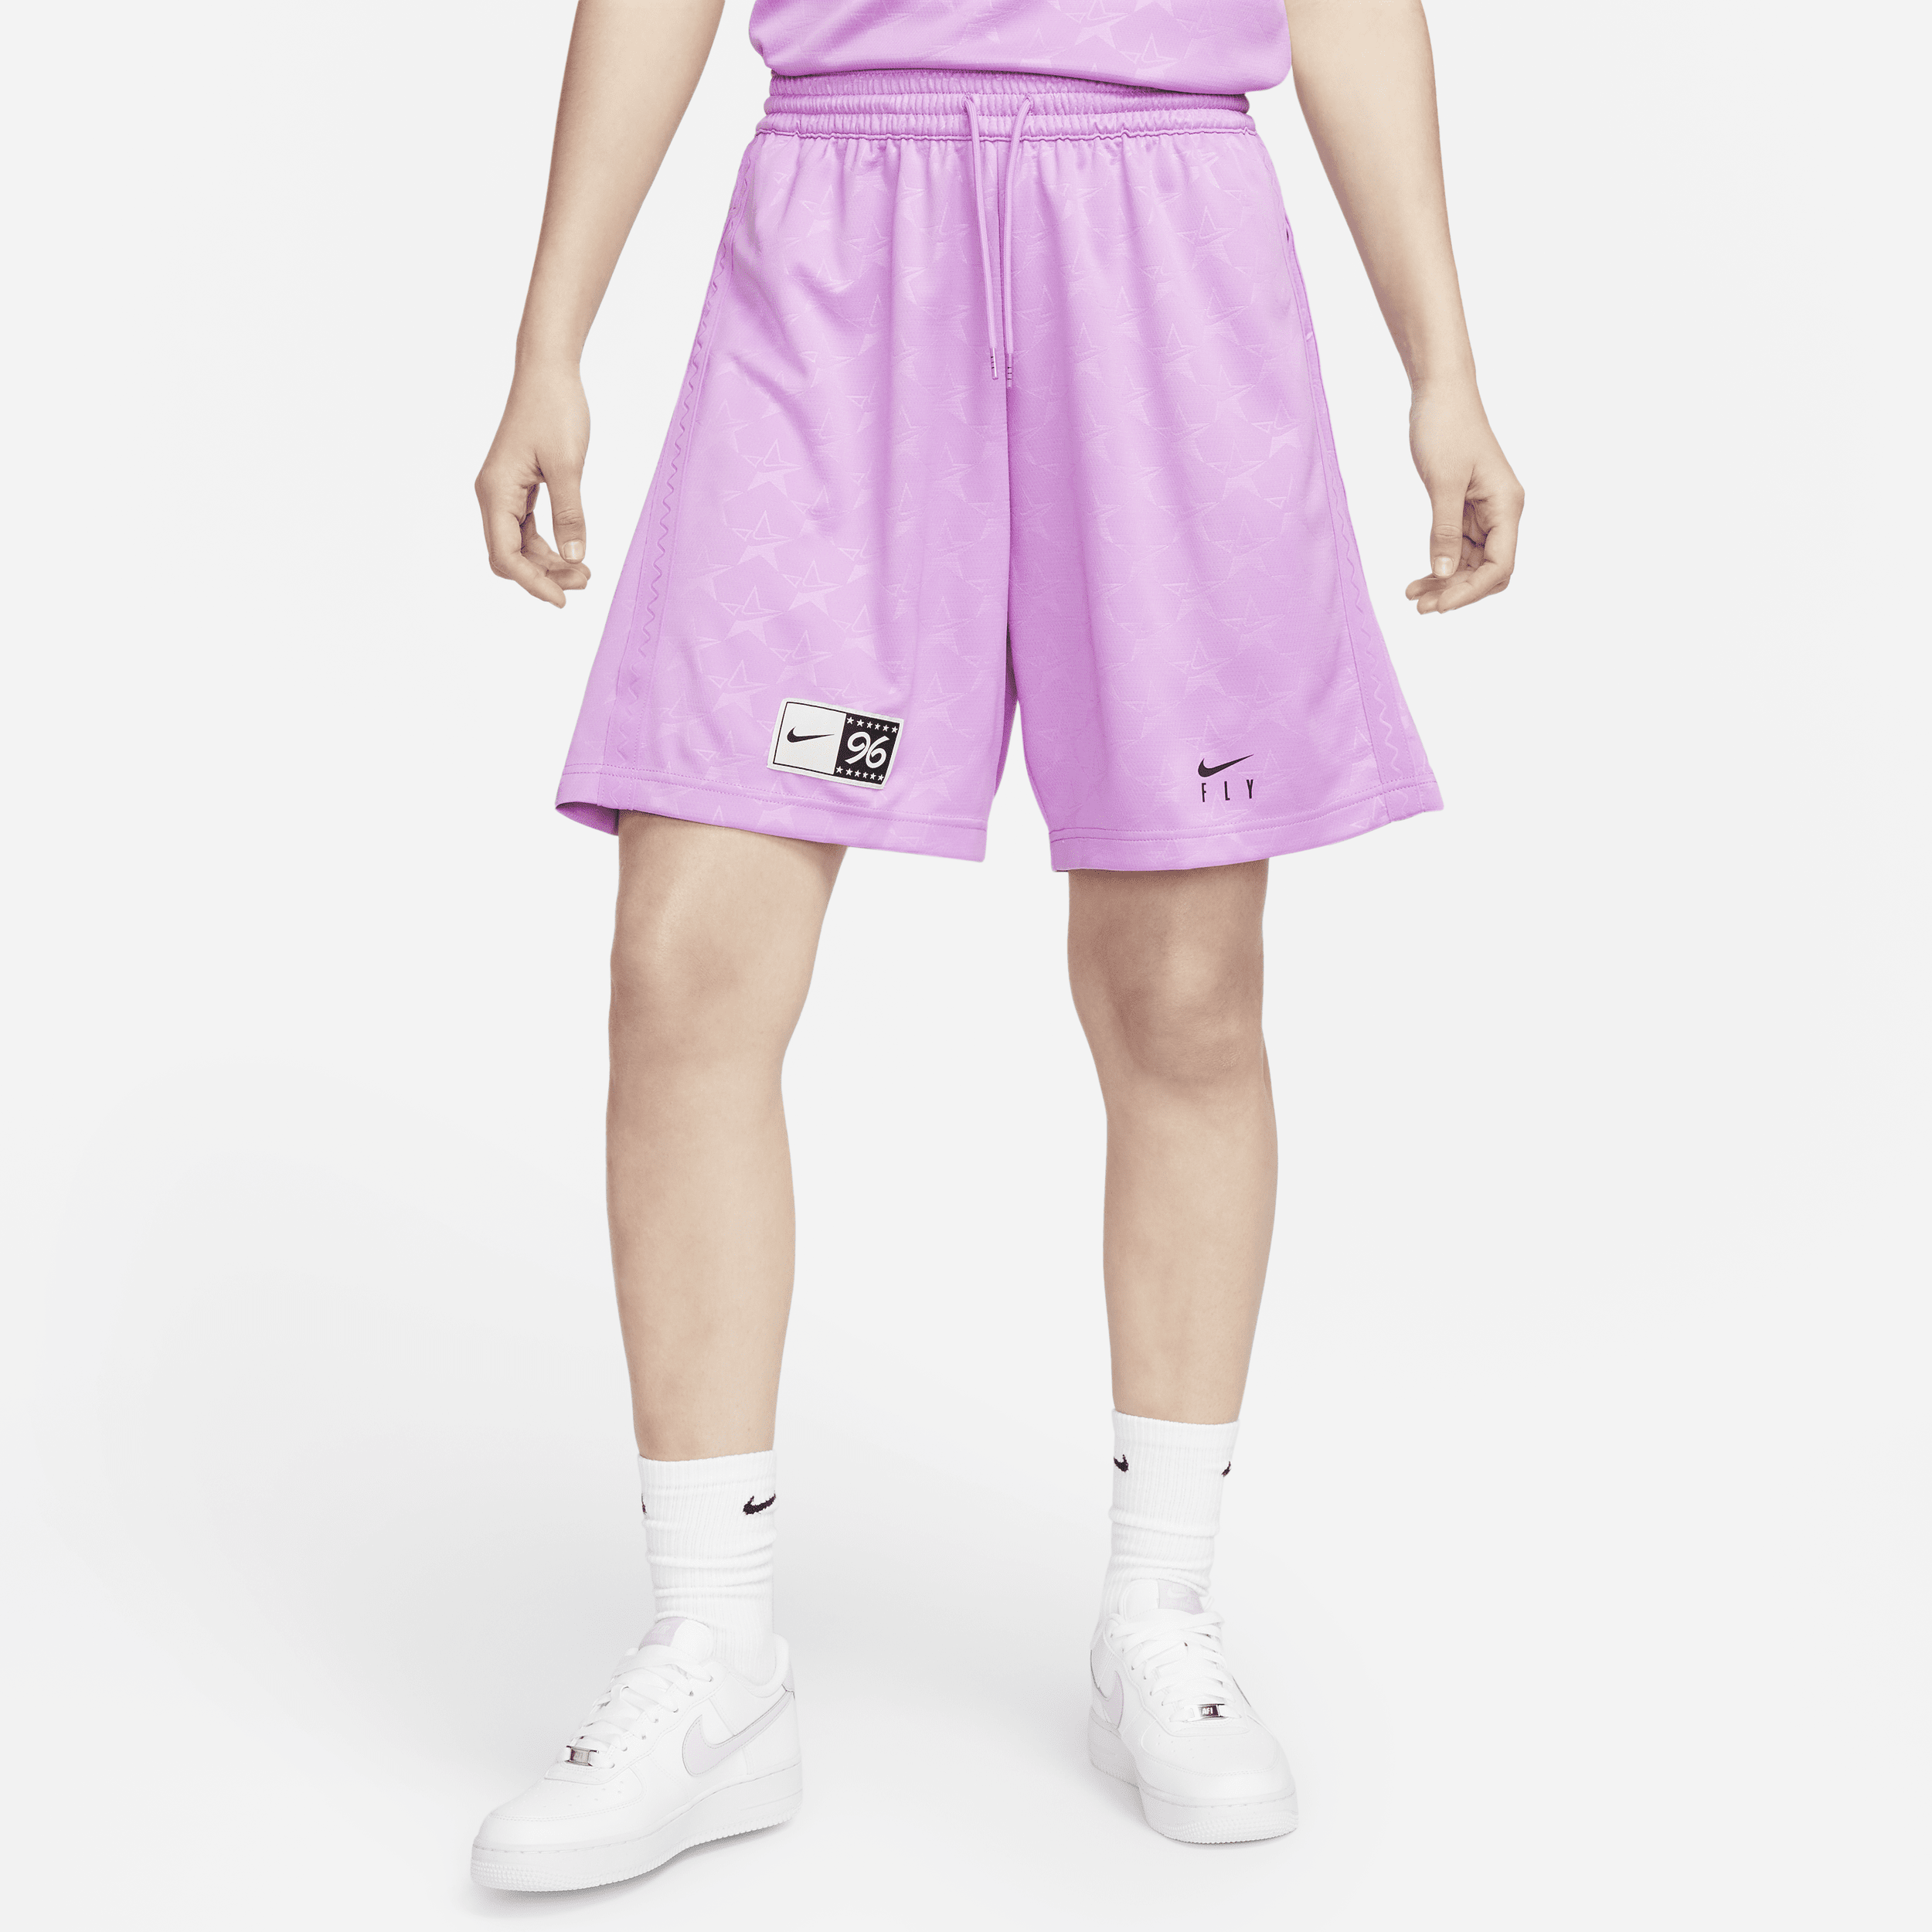 Nike-basketballshorts til kvinder - lilla